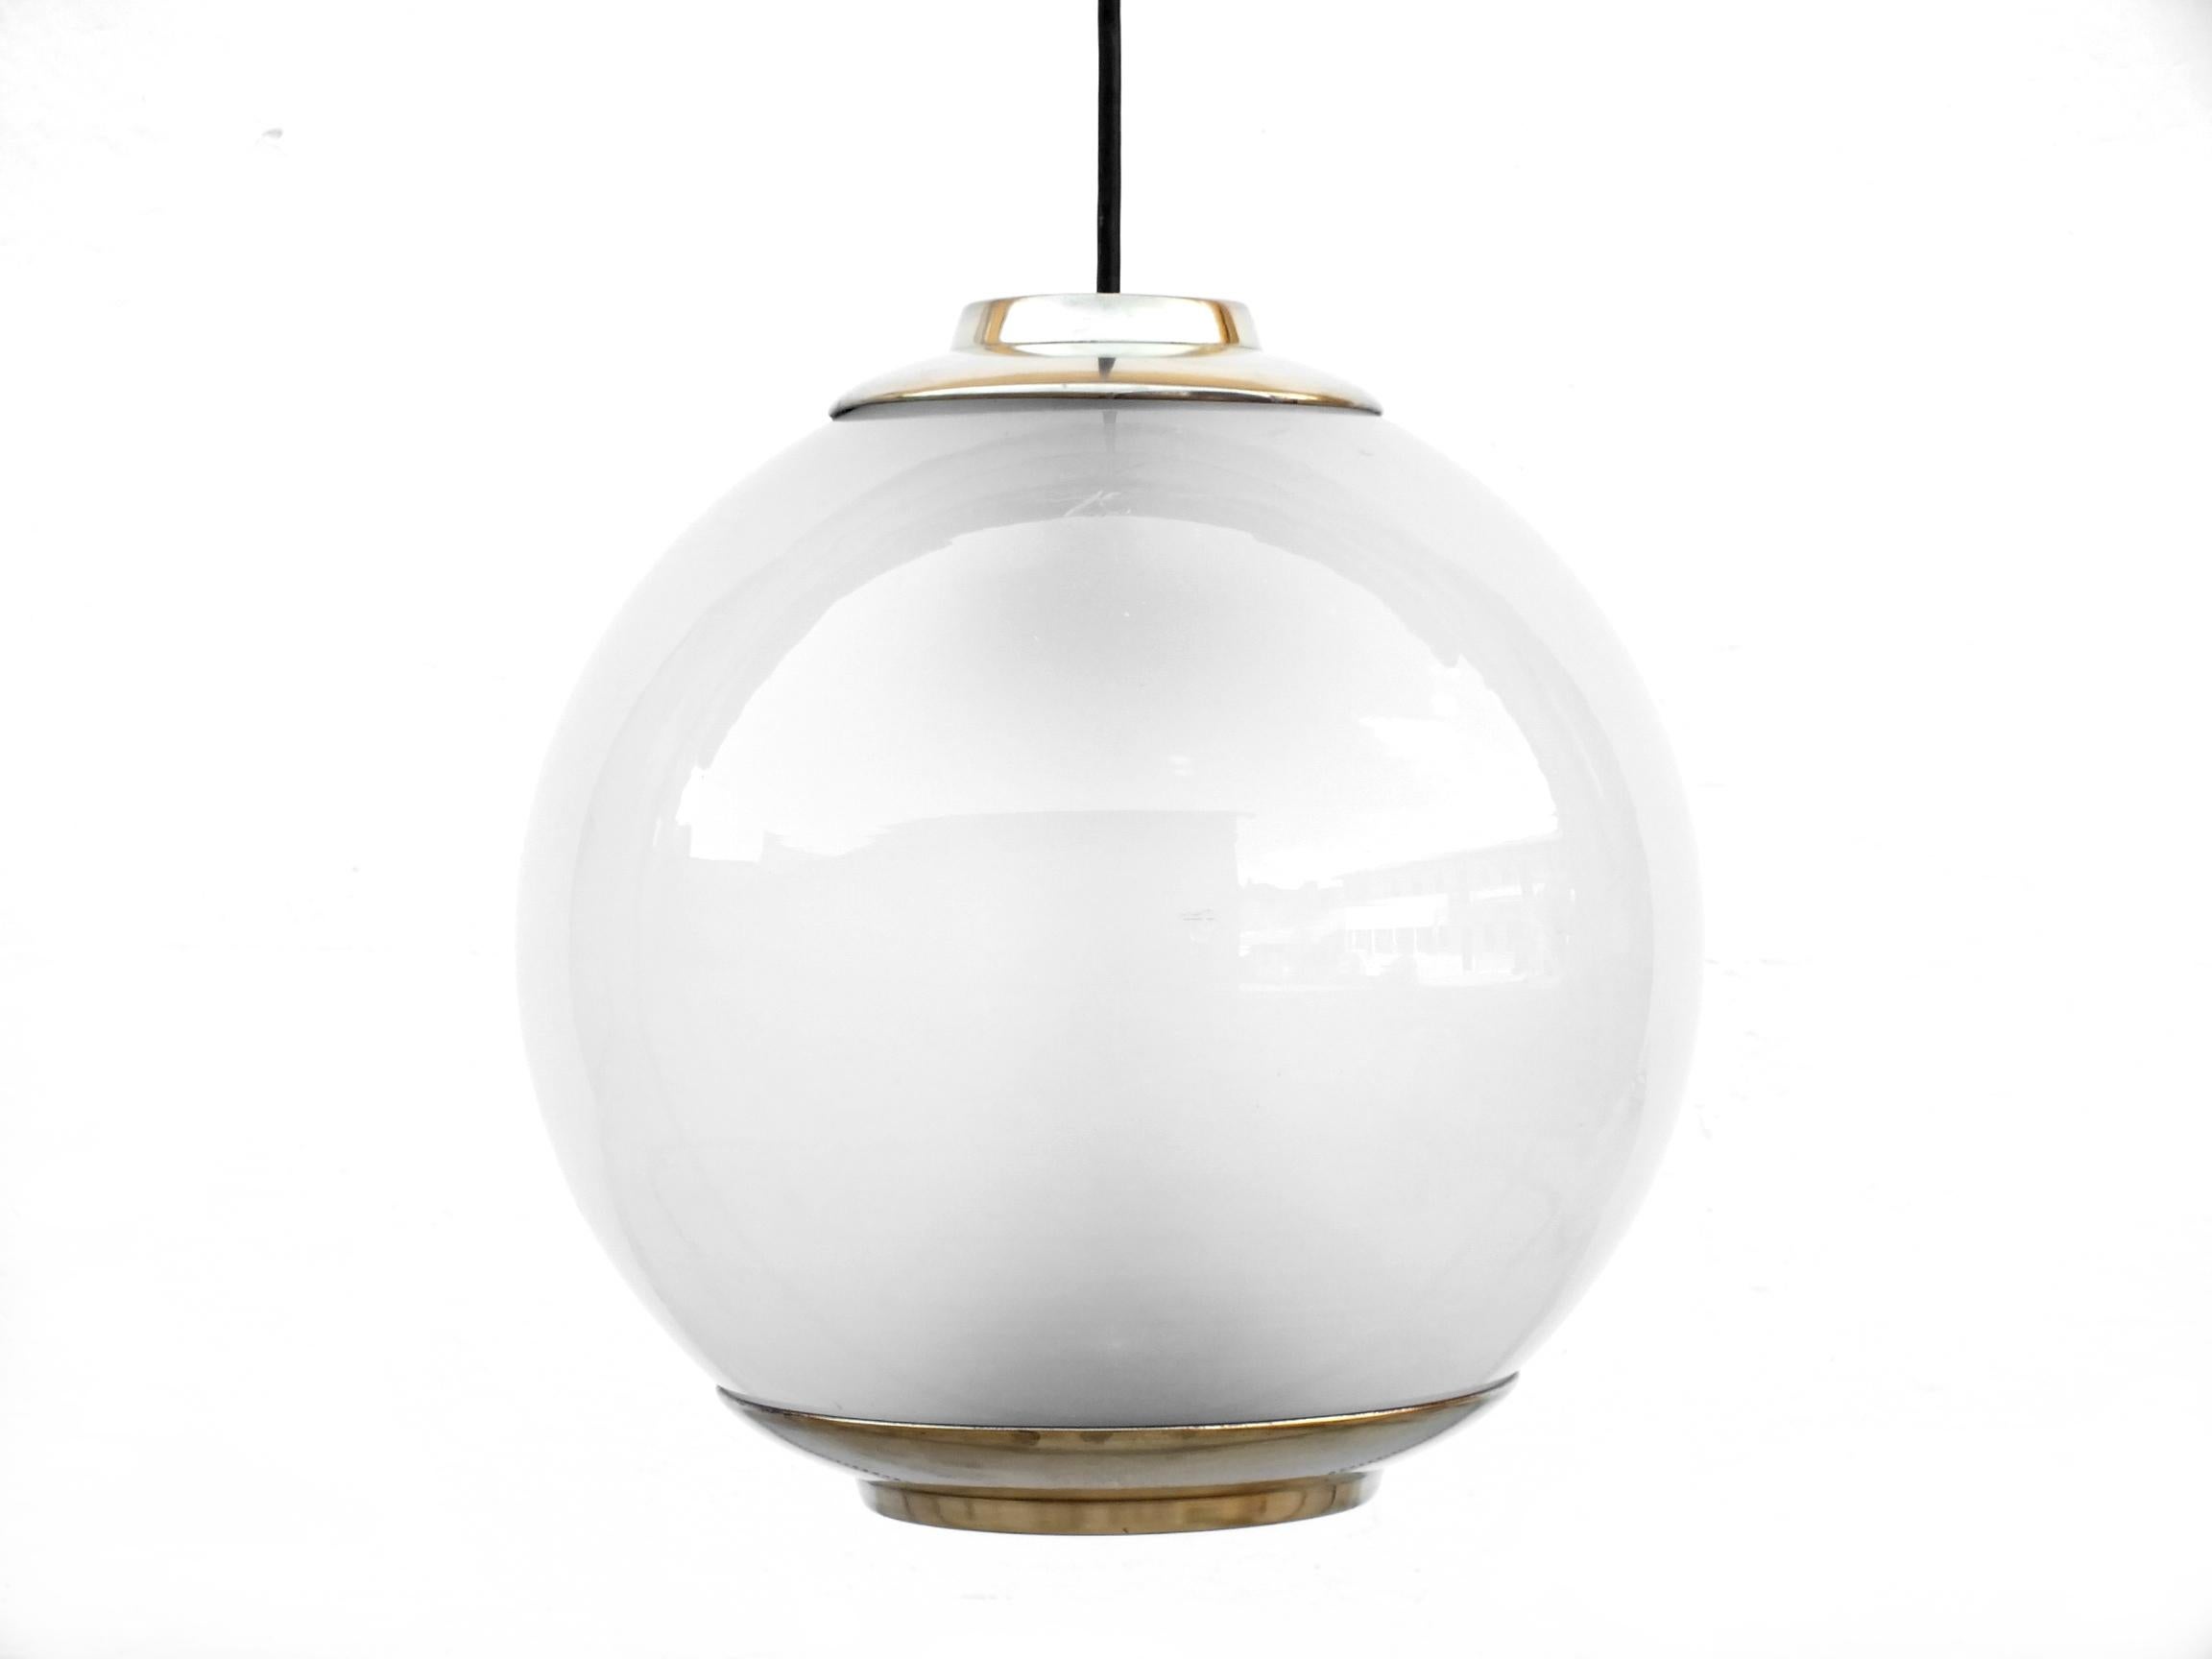 Vintage Big Ball ceilin Lamps Ls2 Luigi Caccia Dominioni Design by Azucena, 1954 For Sale 3